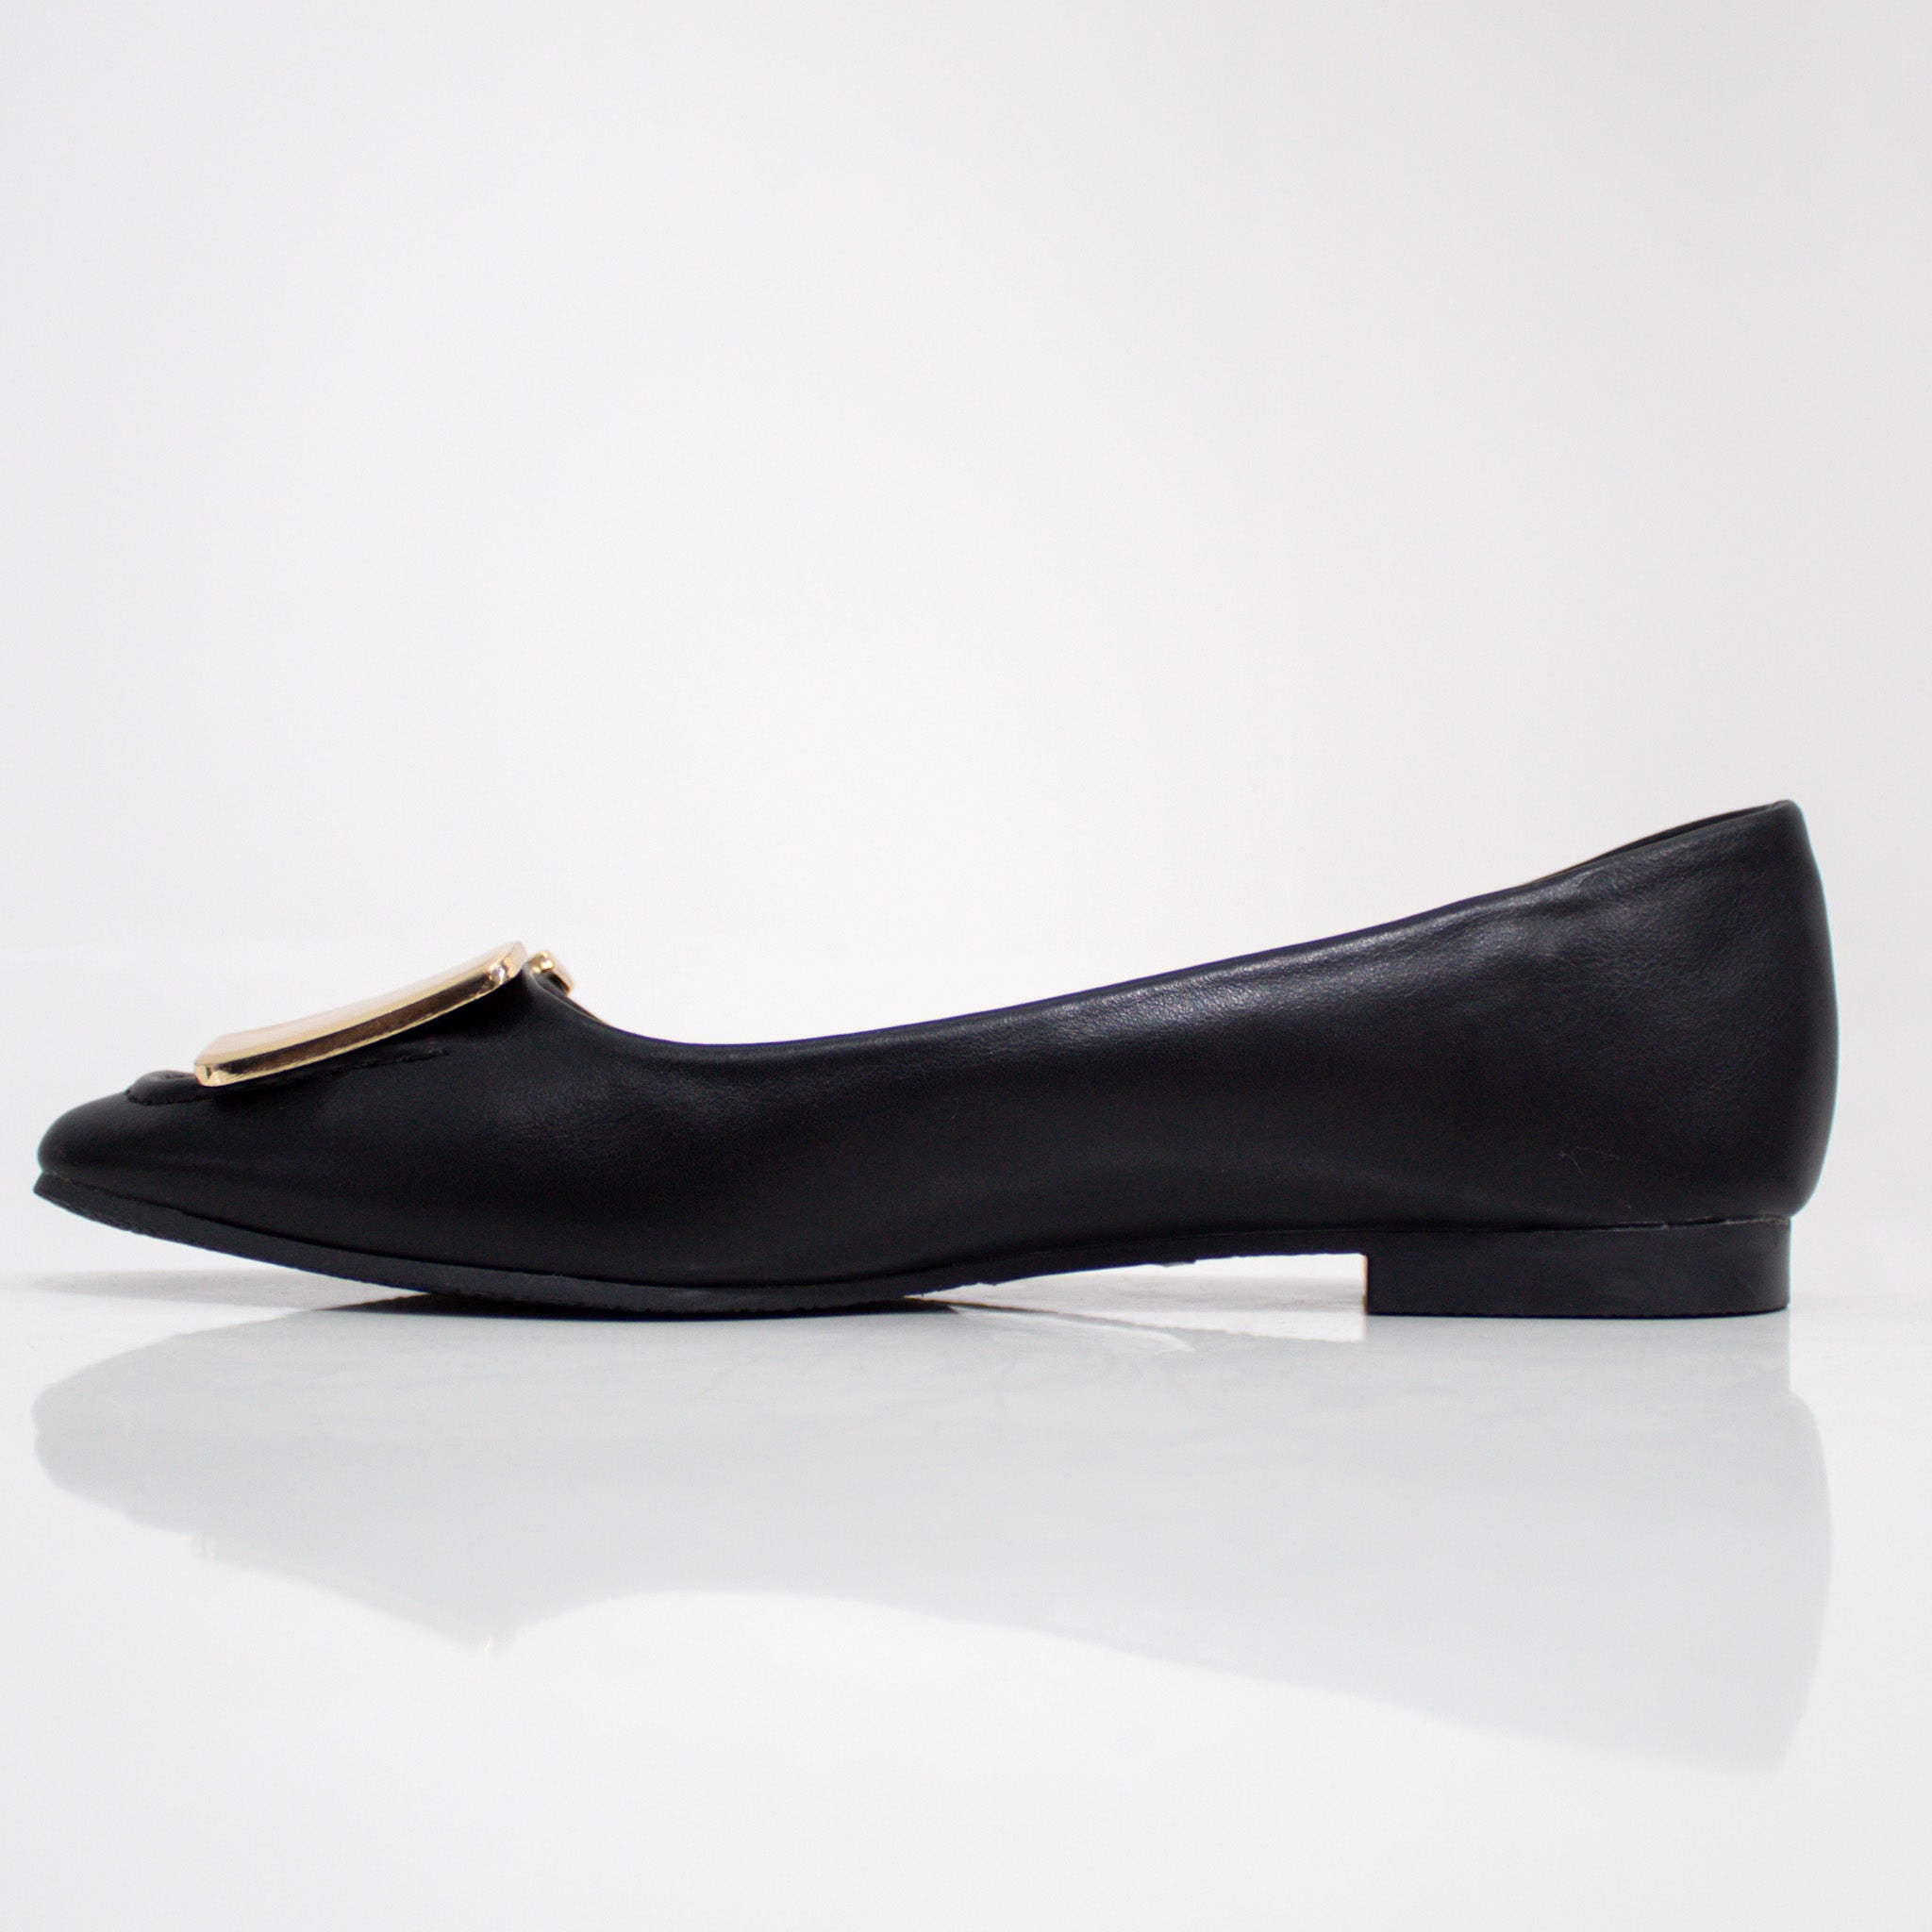 Black gold H-trim faux leather pump shoes alvira